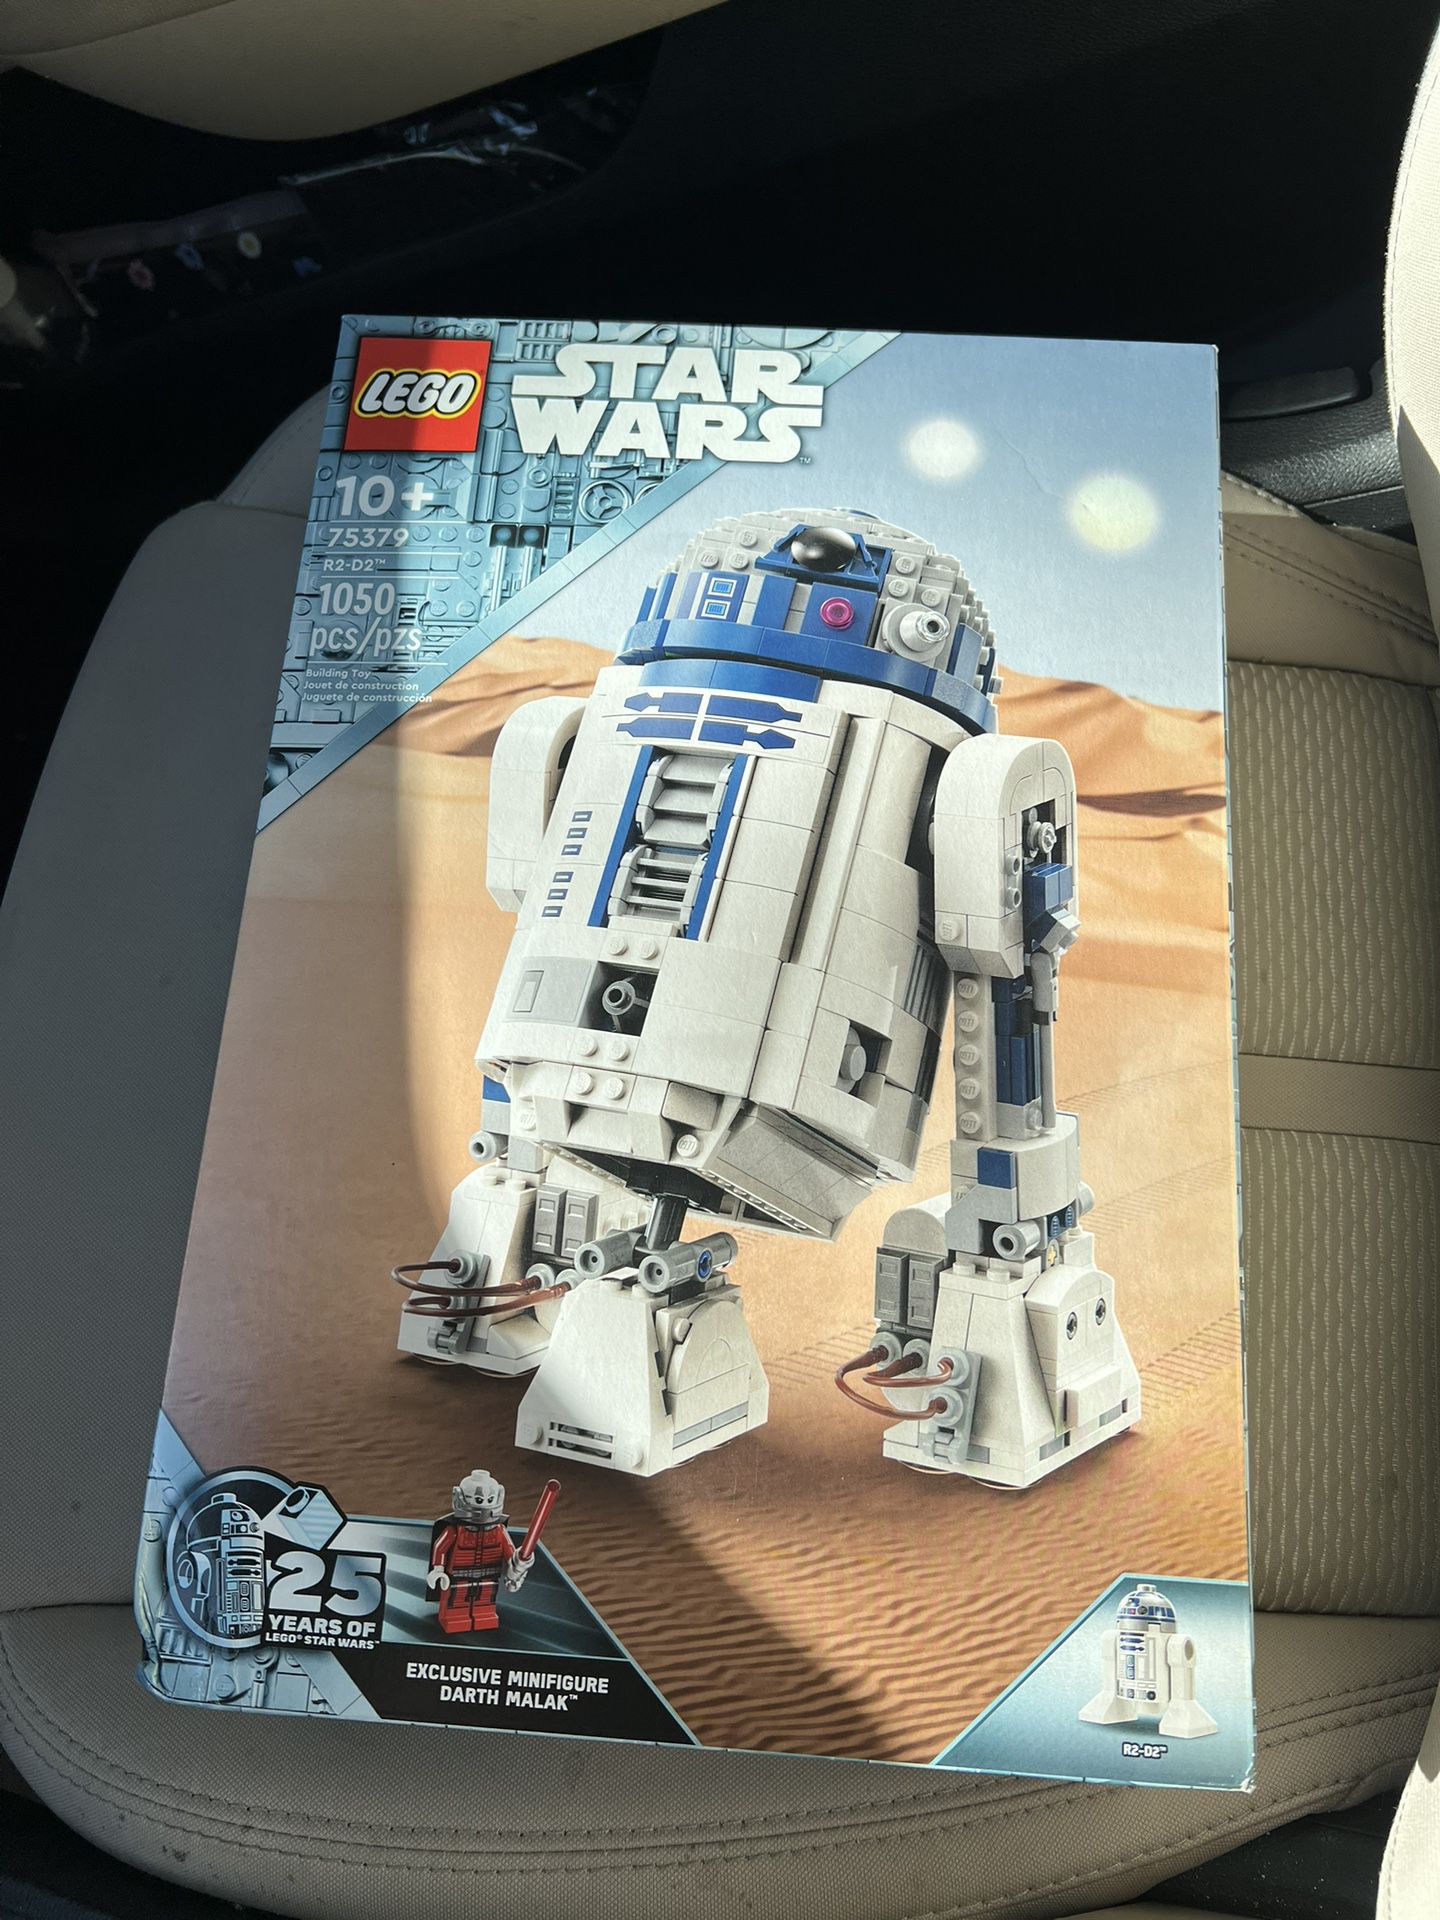 Lego Star Wars R2-D2 